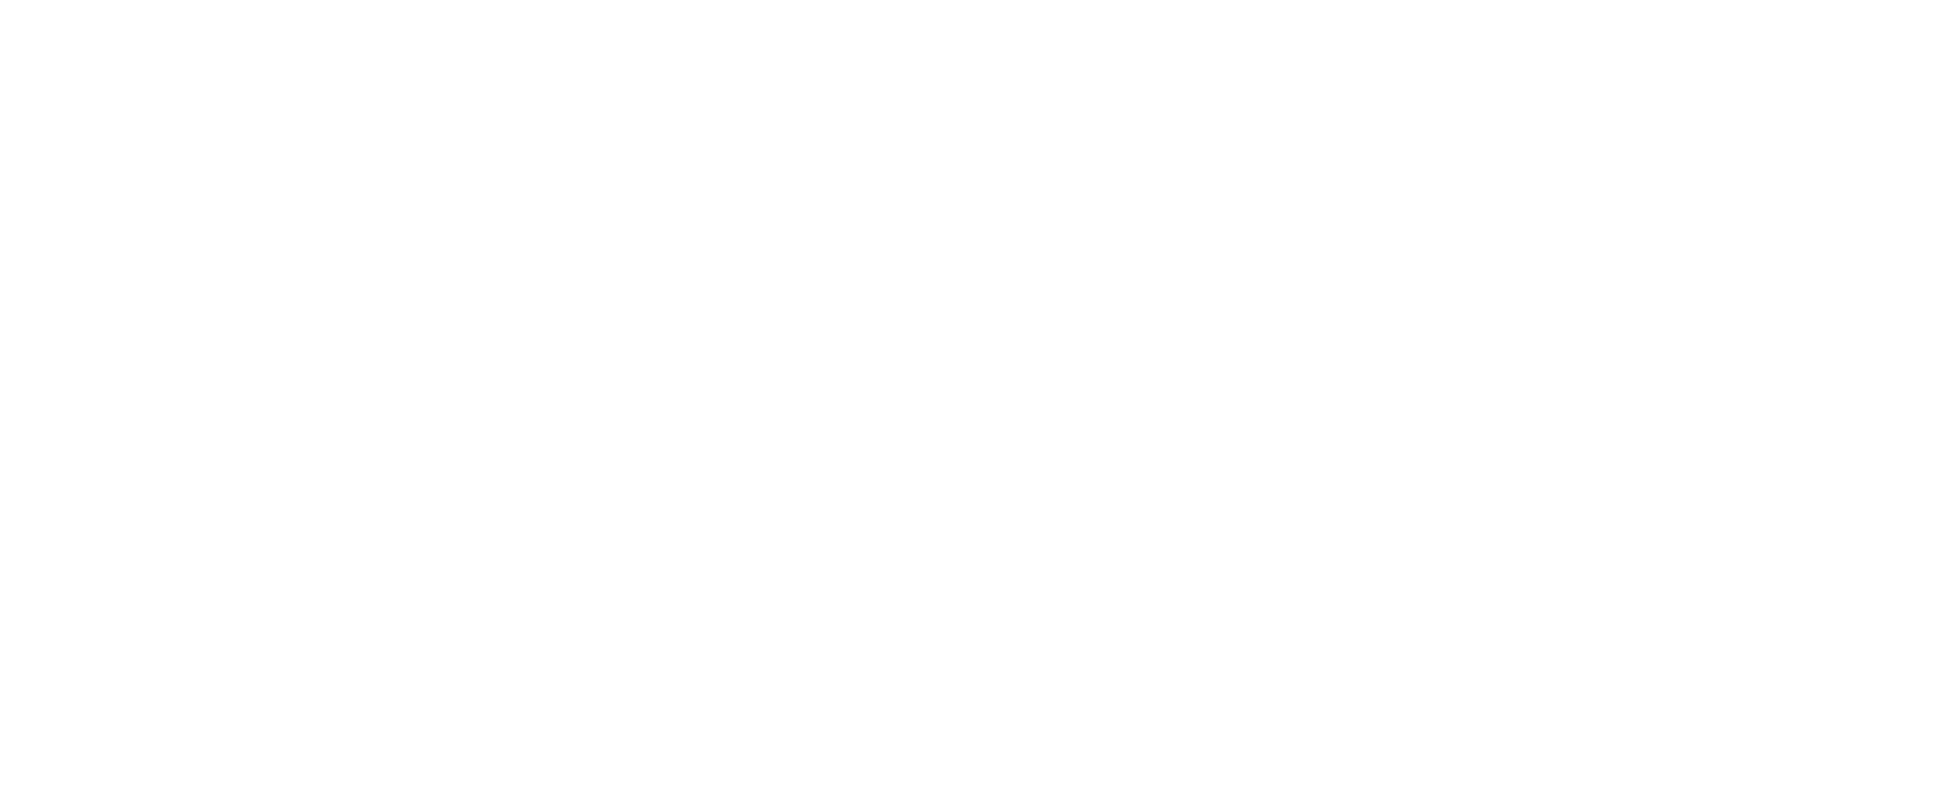 Smart Checkouts